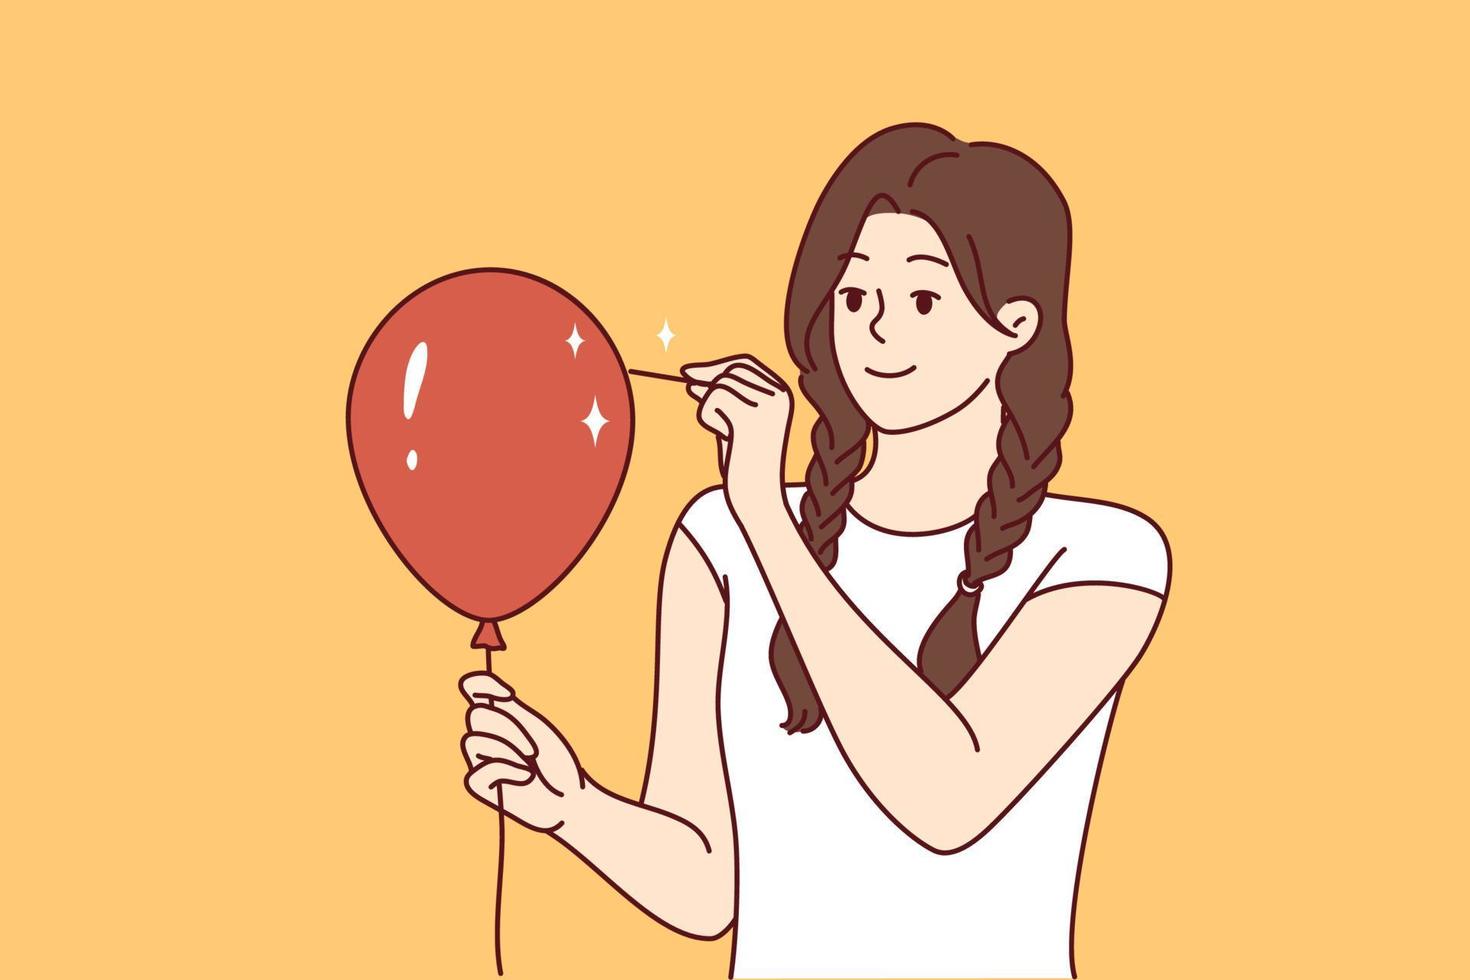 ung kvinna genomborrar ballong med nål och utseende framåt- leende. tonåring flicka i tillfällig kläder önskar till skrämma någon vill ha till brista röd uppblåsbar ballong. platt vektor illustration